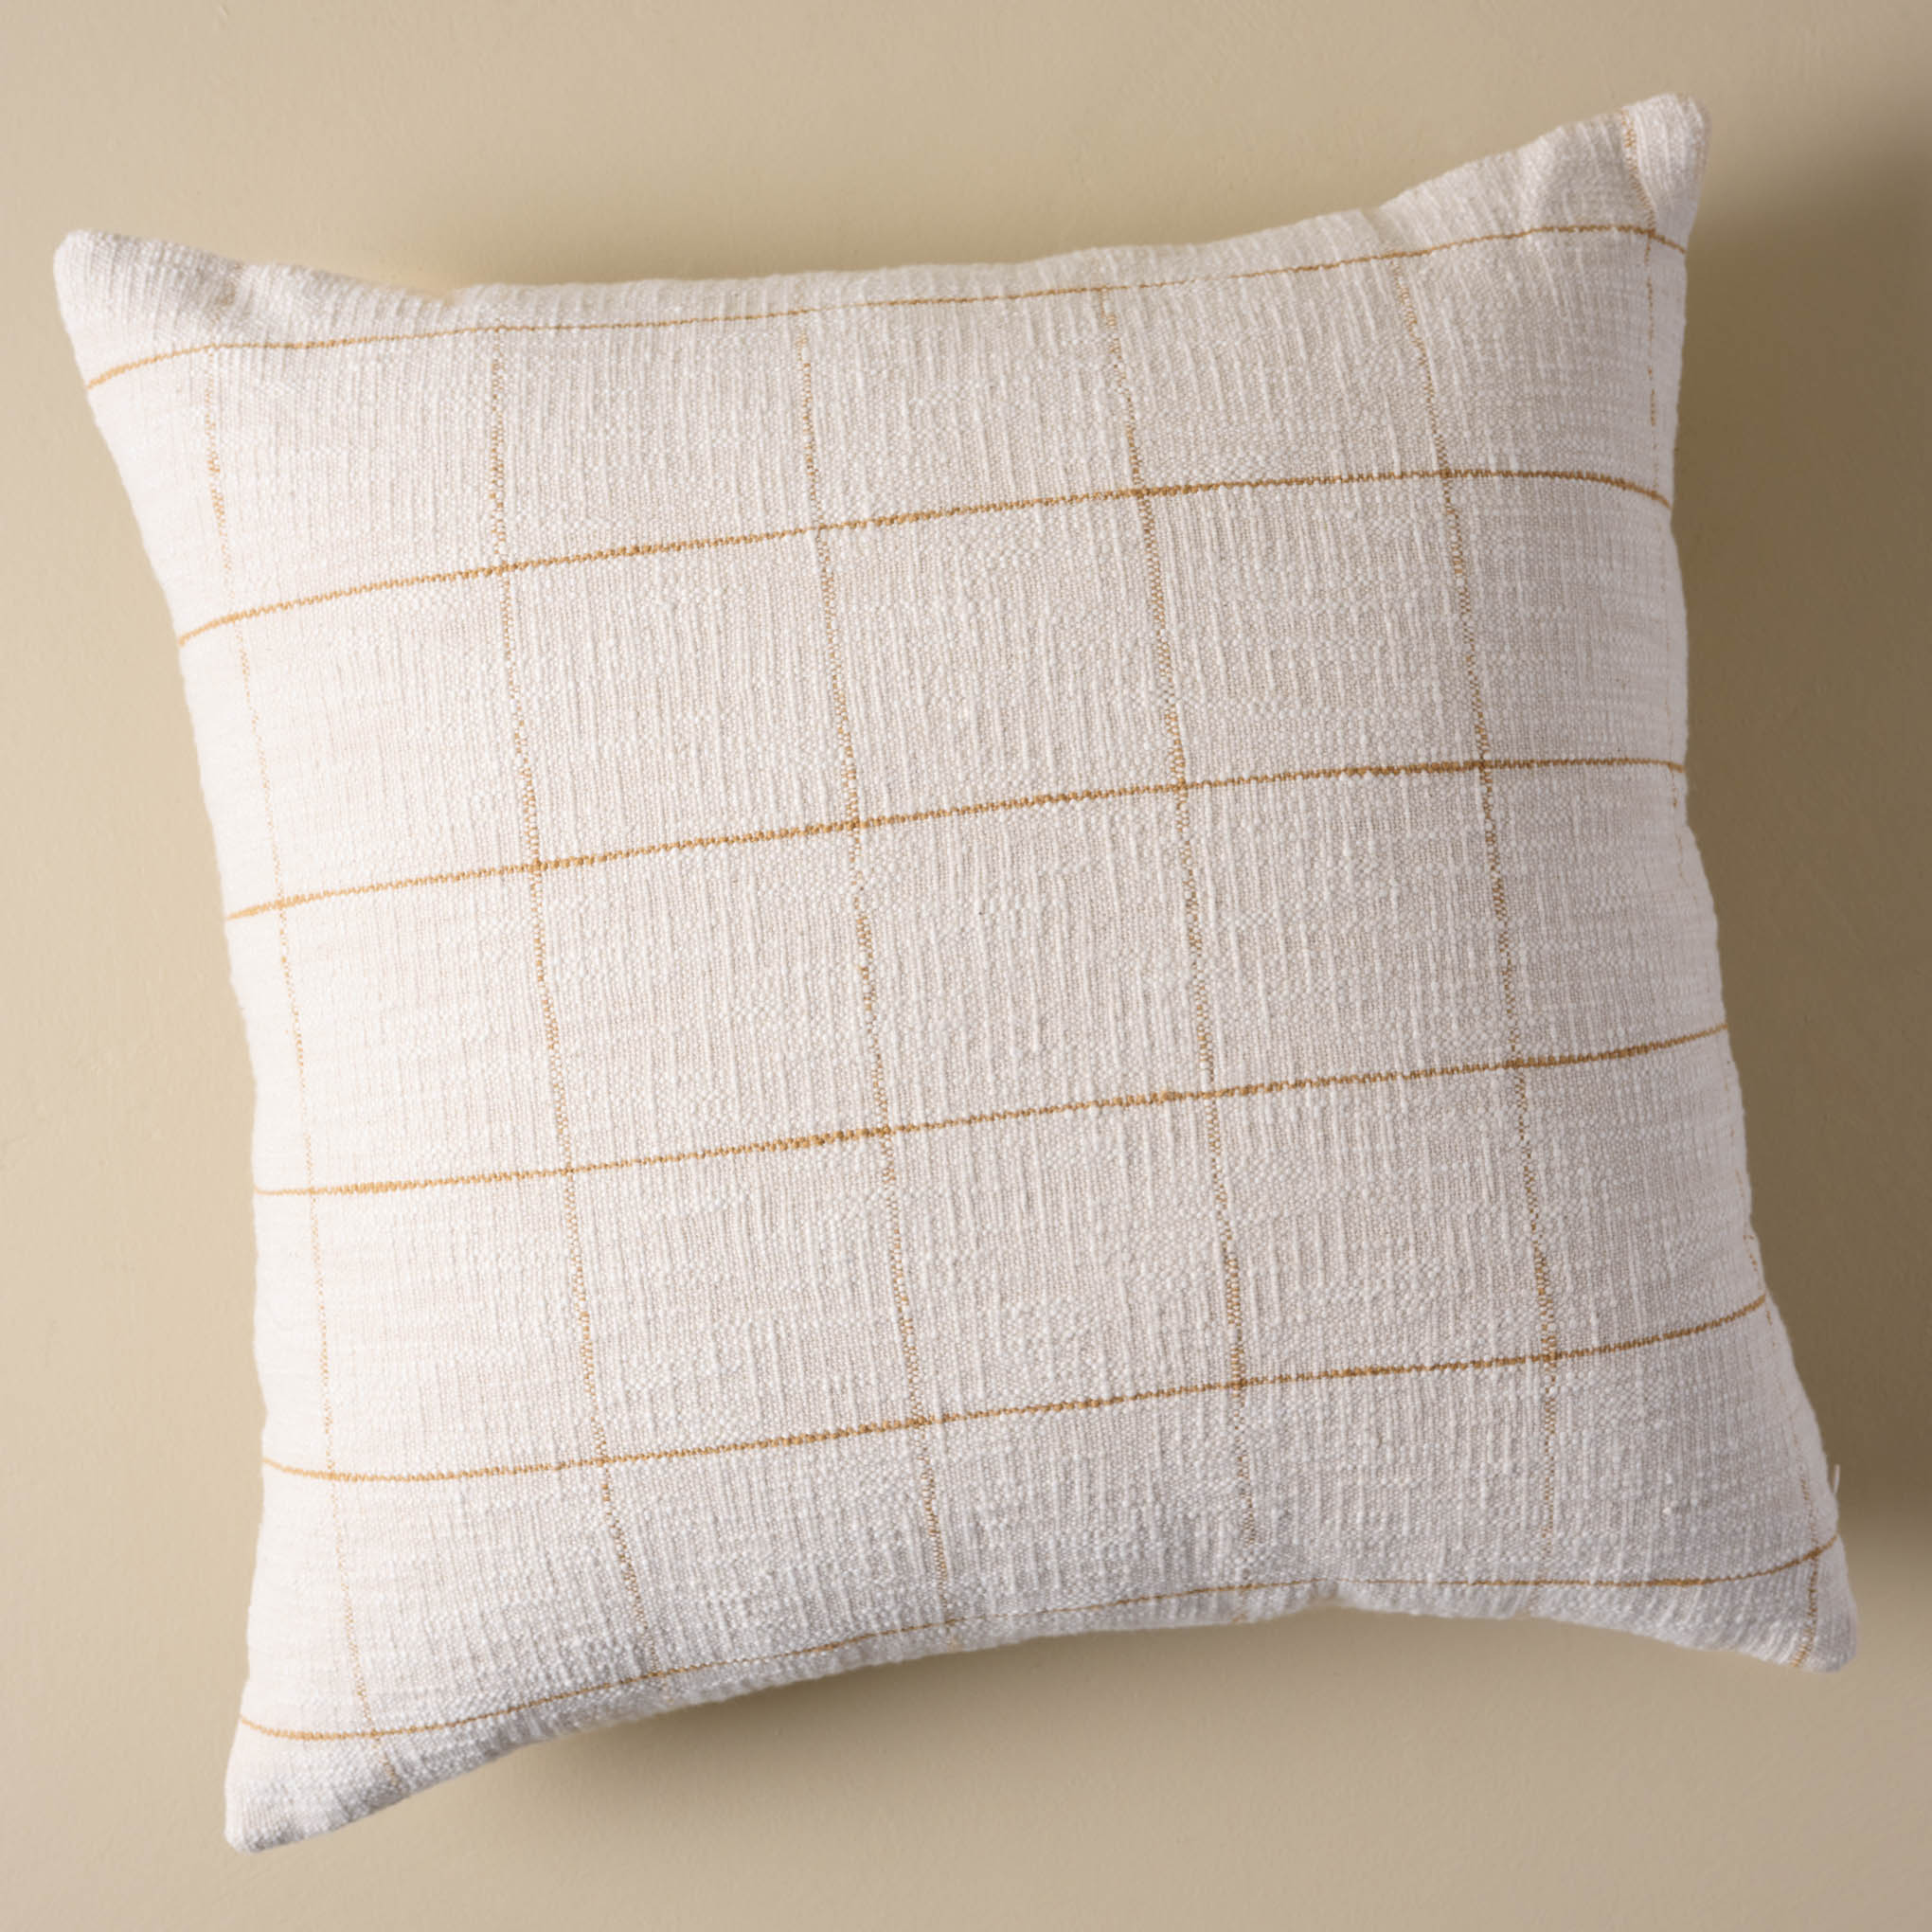 Josie Textured Pillow $68.00